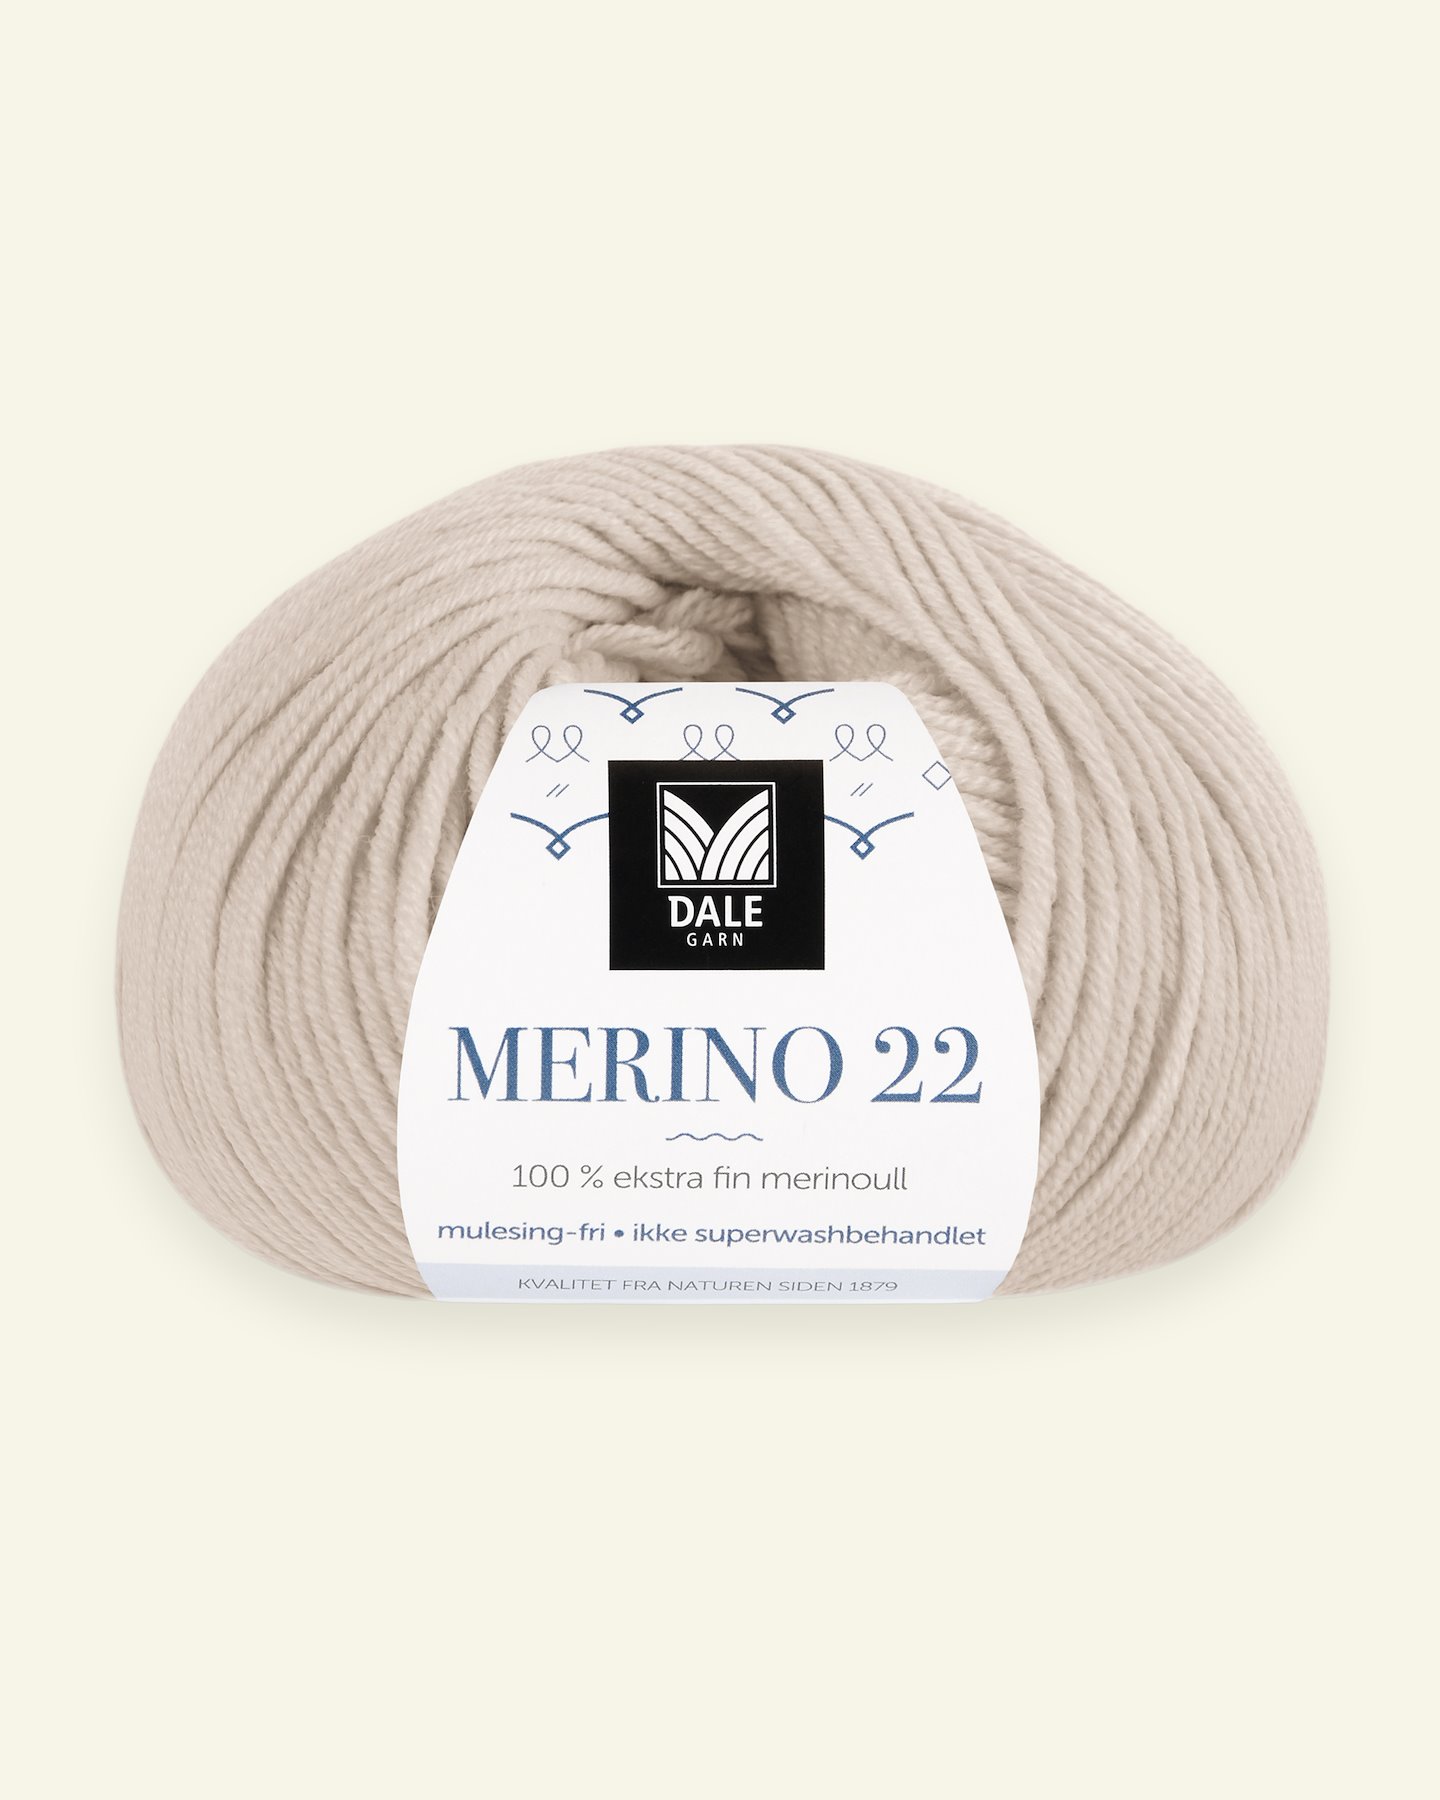 Dale Garn, 100% Extrafeine Merino-Wolle "Merino 22", puder (2022) 90000383_pack